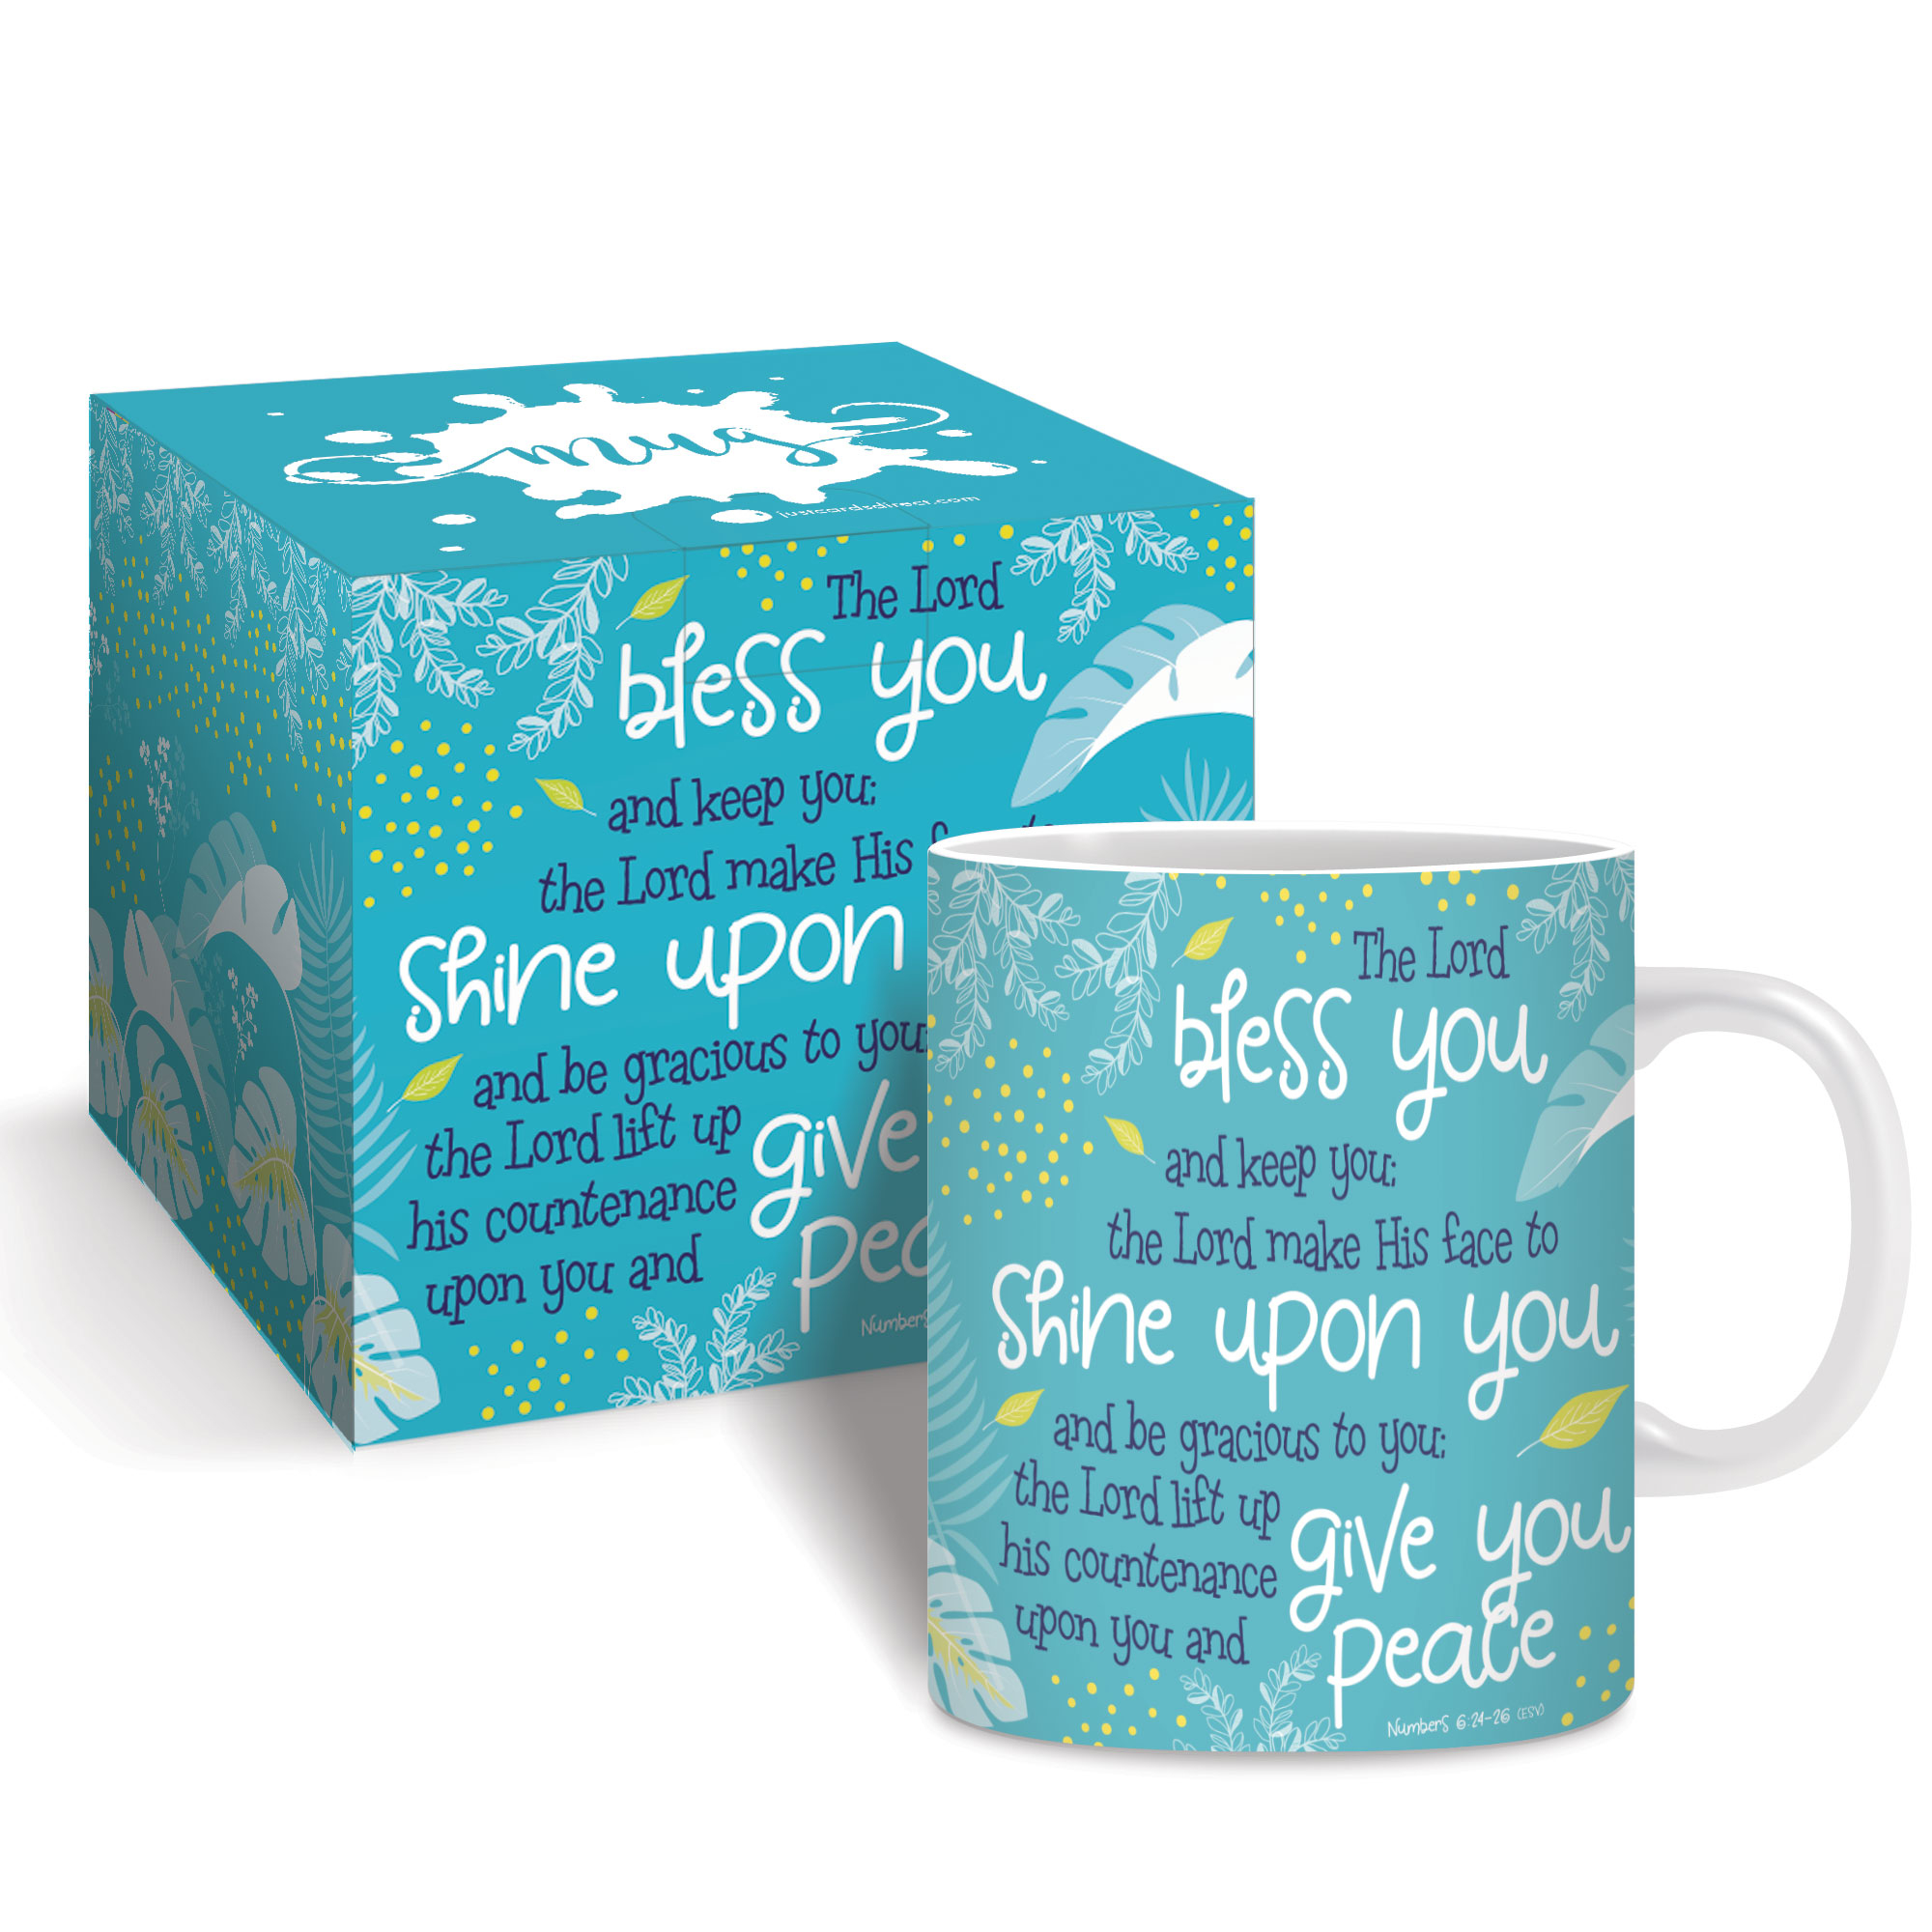 Bless you (teal) Mug & Gift box